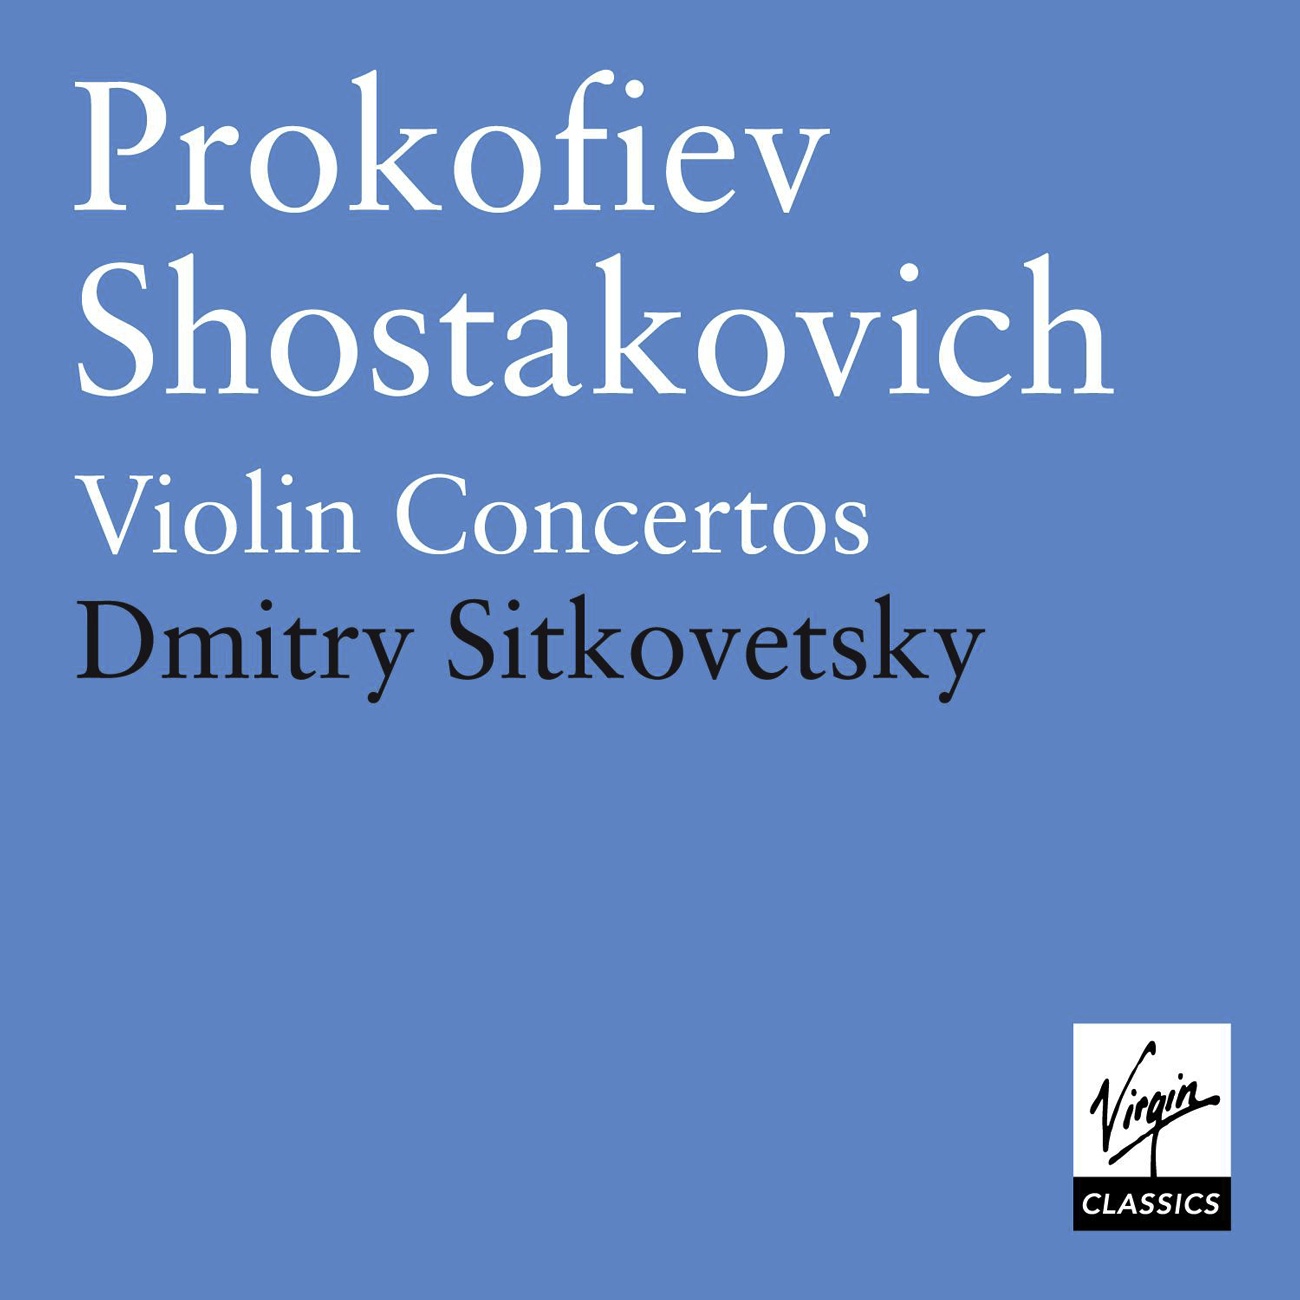 Violin Concerto No. 1 in D major Op. 19: III. Moderato